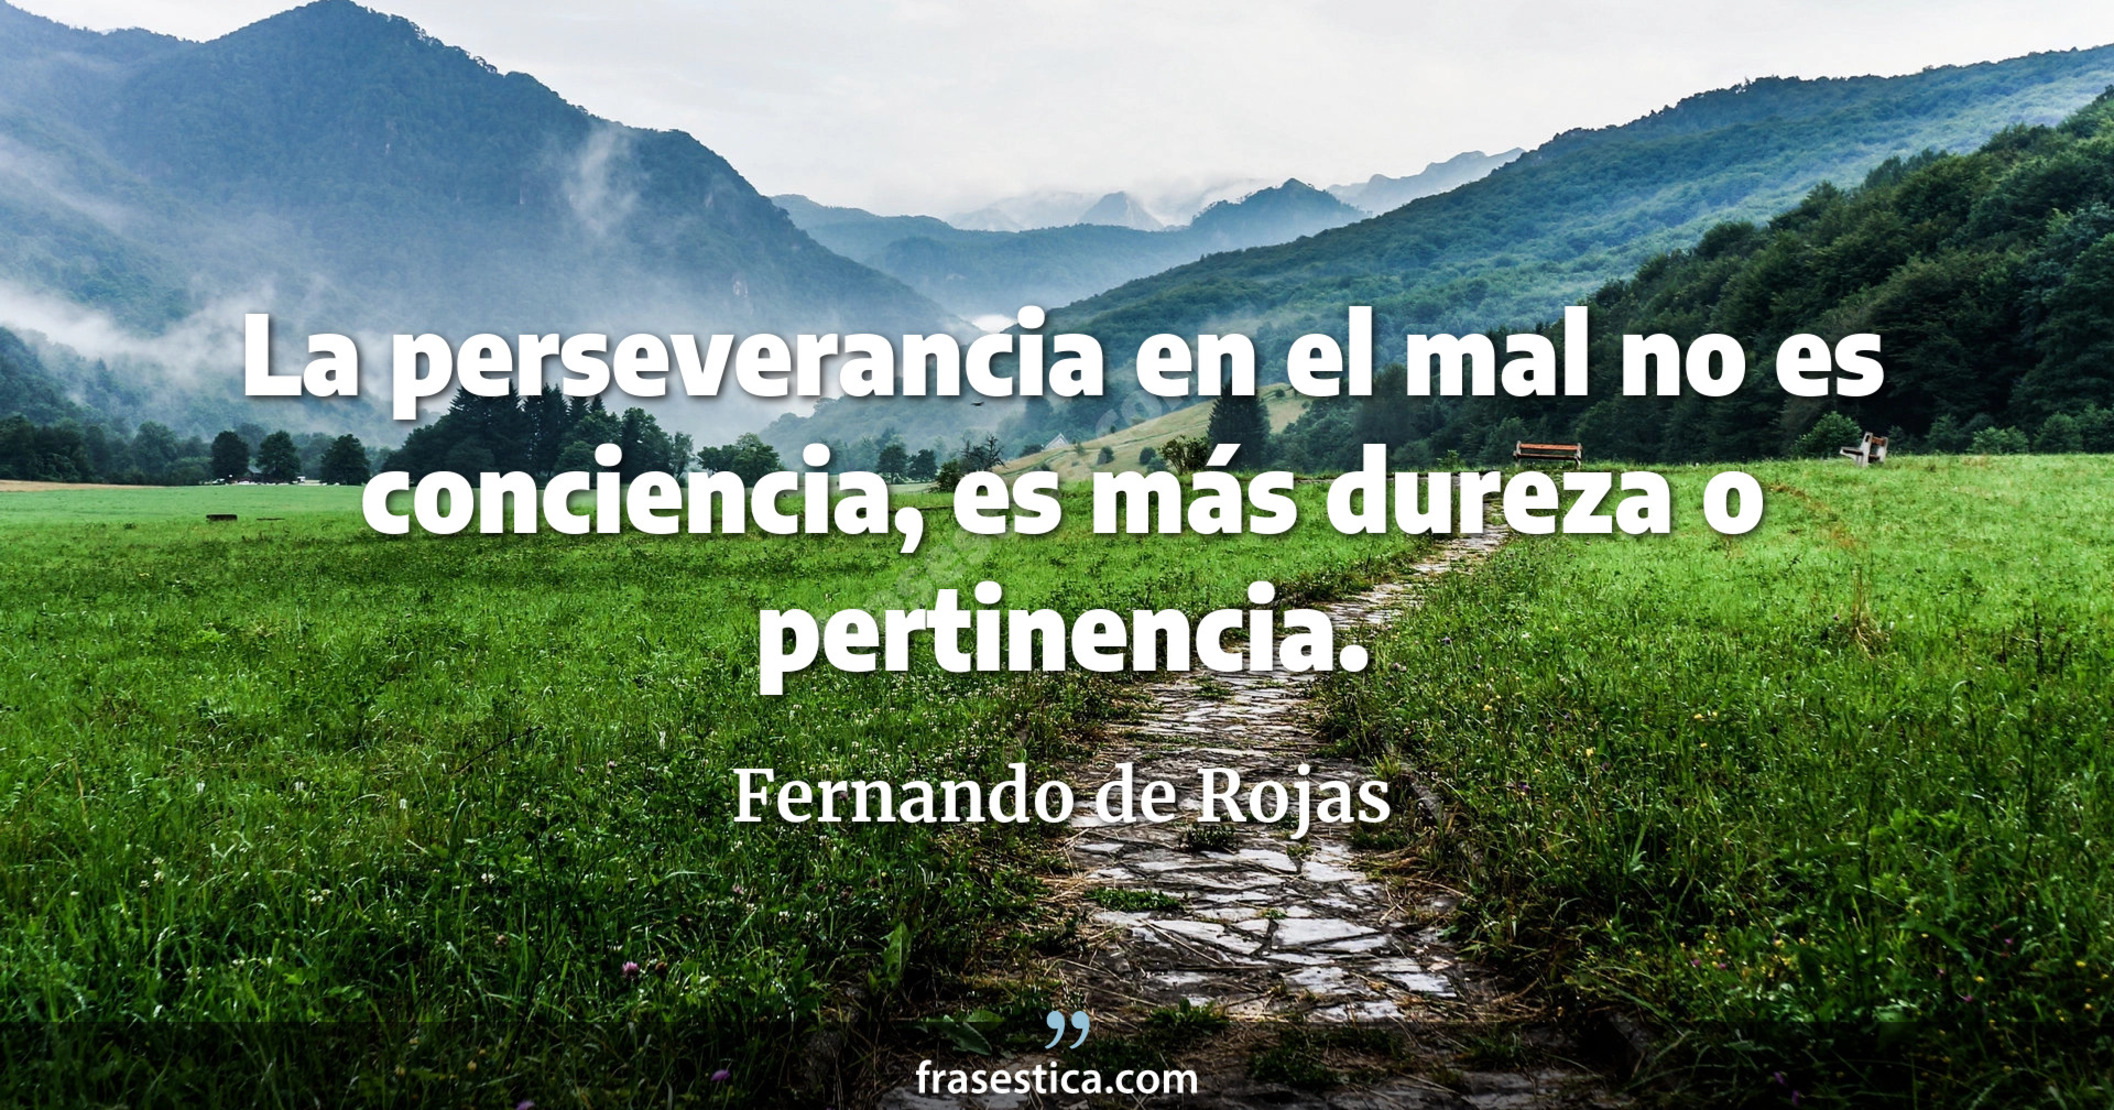 La perseverancia en el mal no es conciencia, es más dureza o pertinencia. - Fernando de Rojas